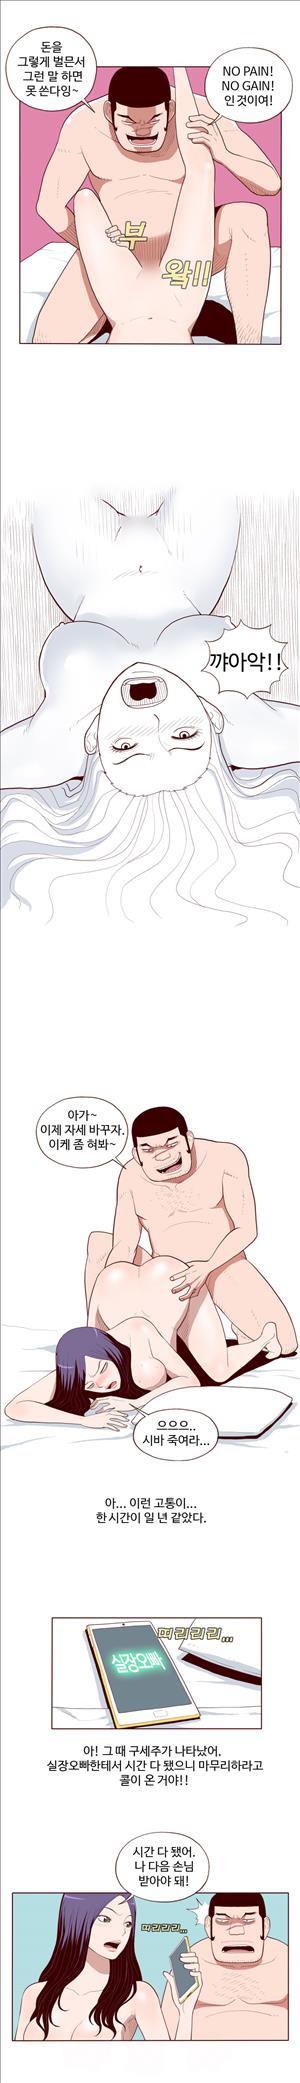 미색 - 썰만화 시즌4 51화 - 오피녀의 비밀(중)_3